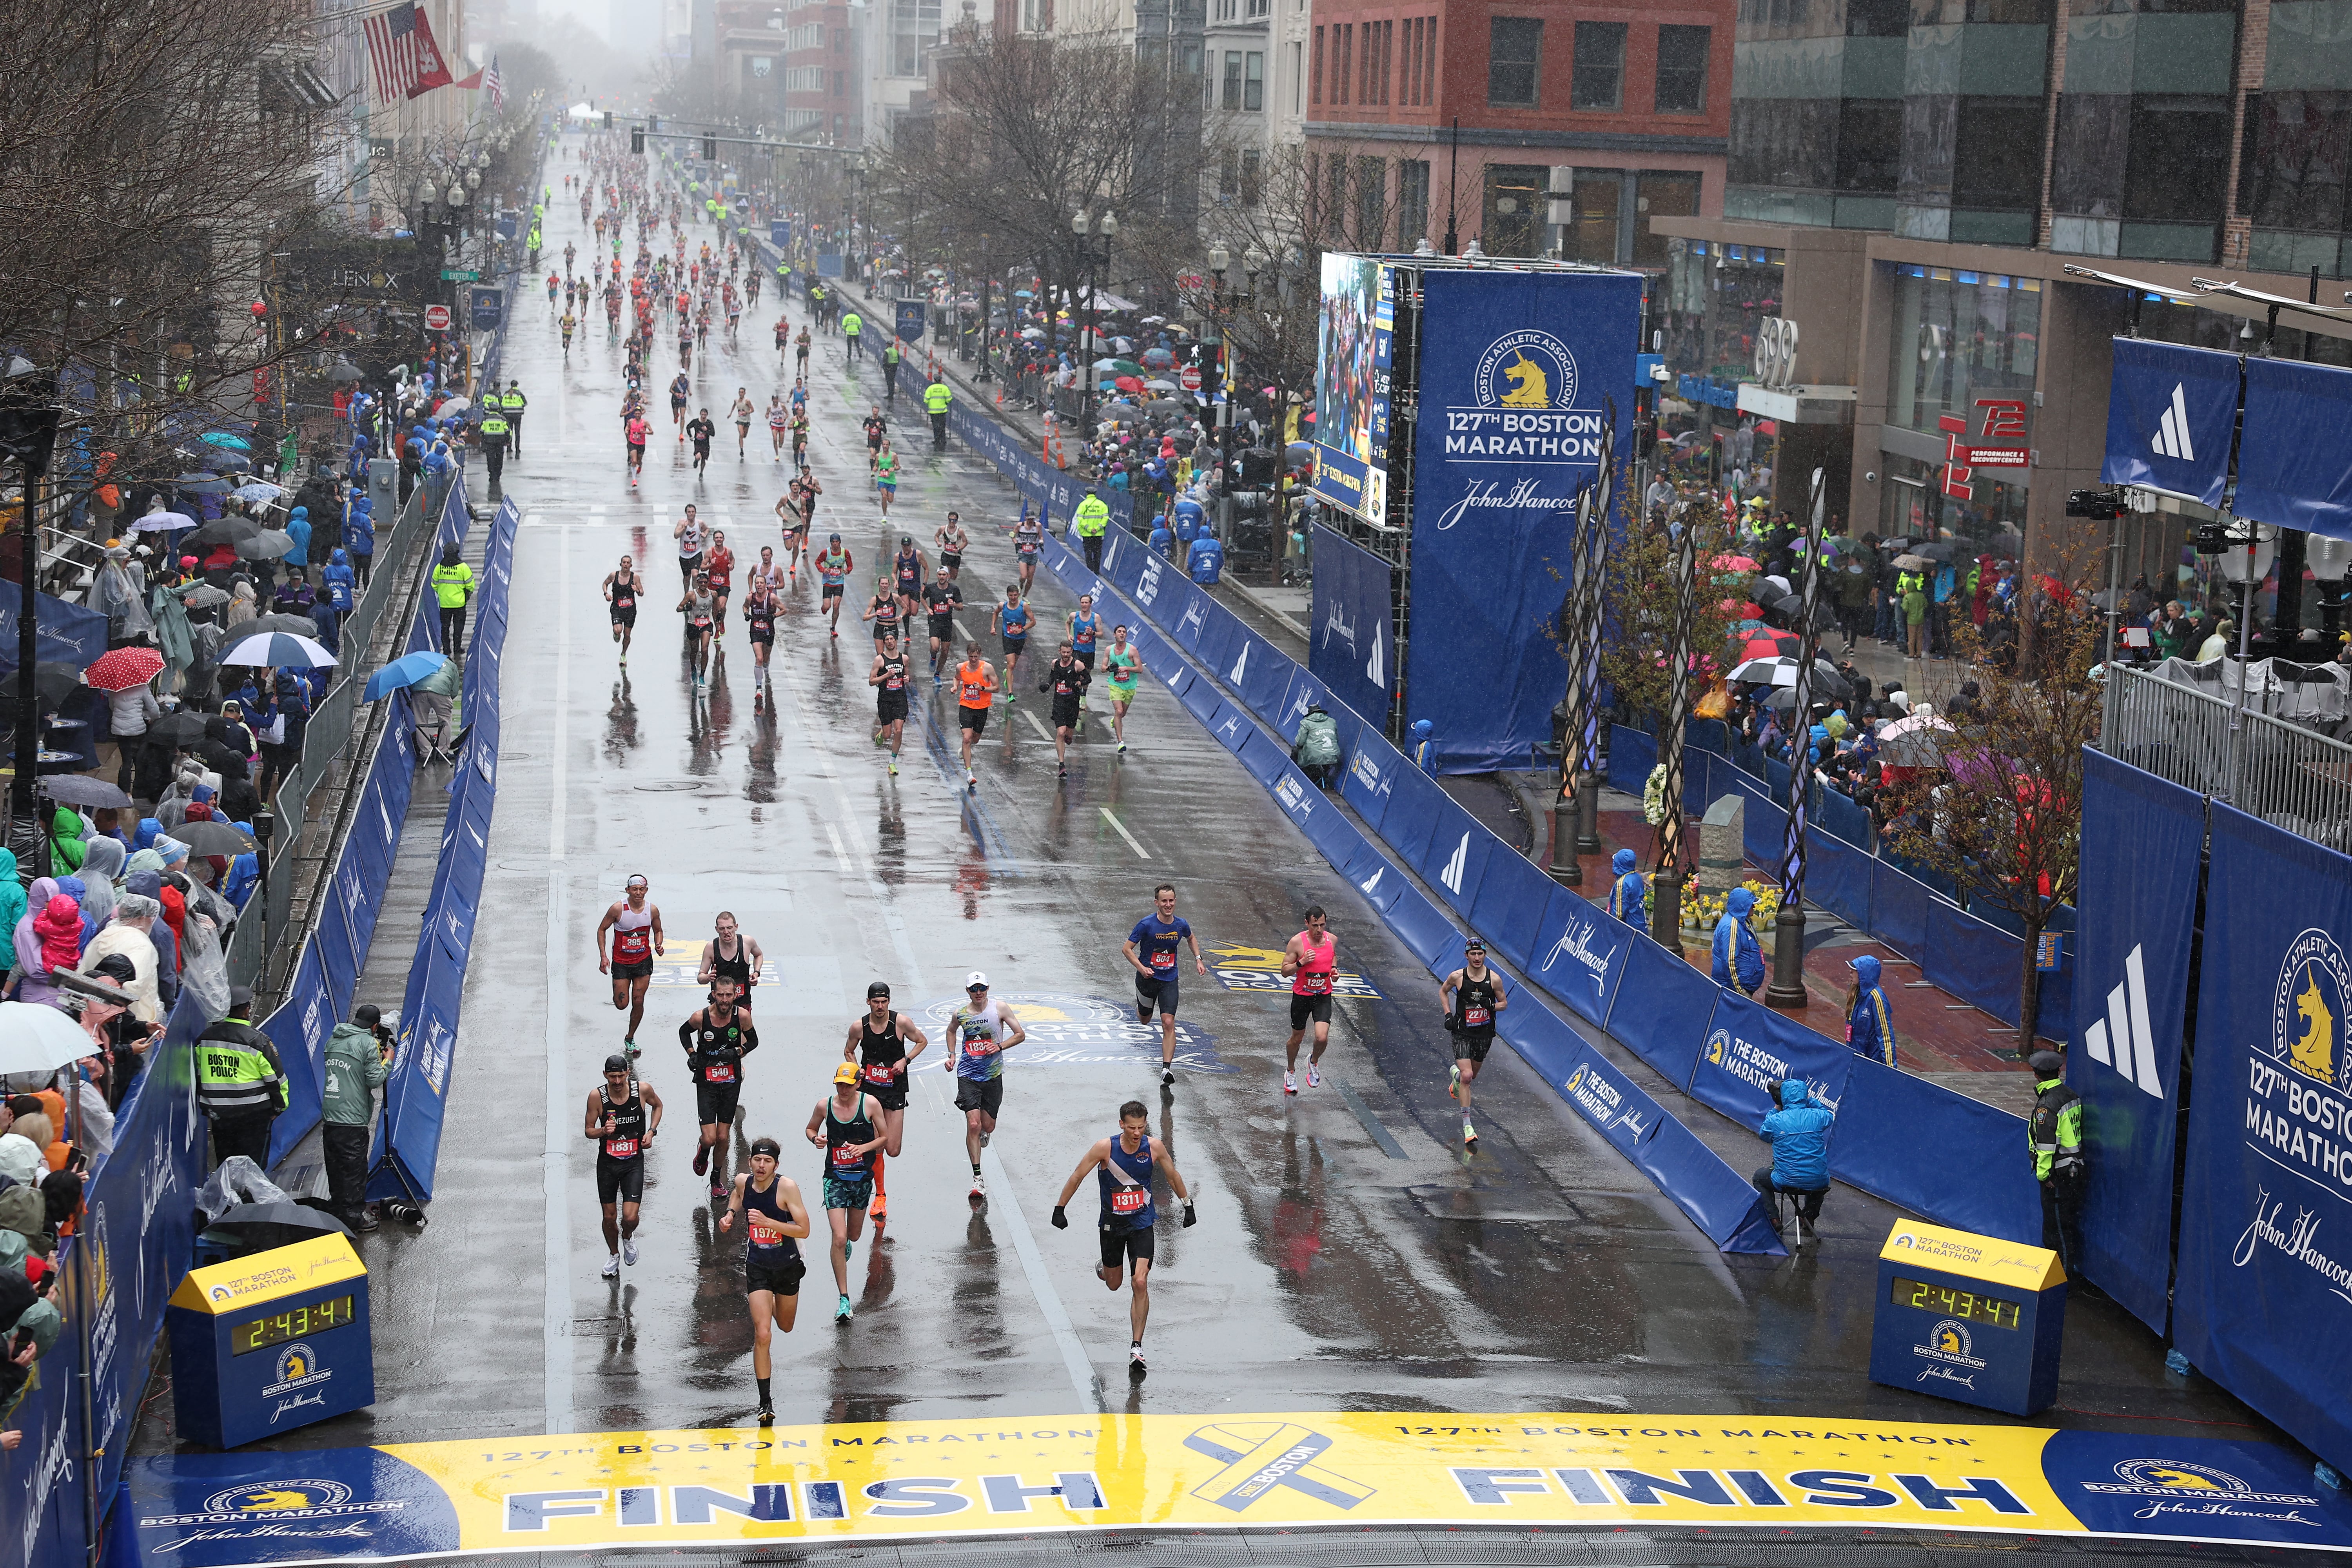 Boston Marathon® 2023 Running Pants